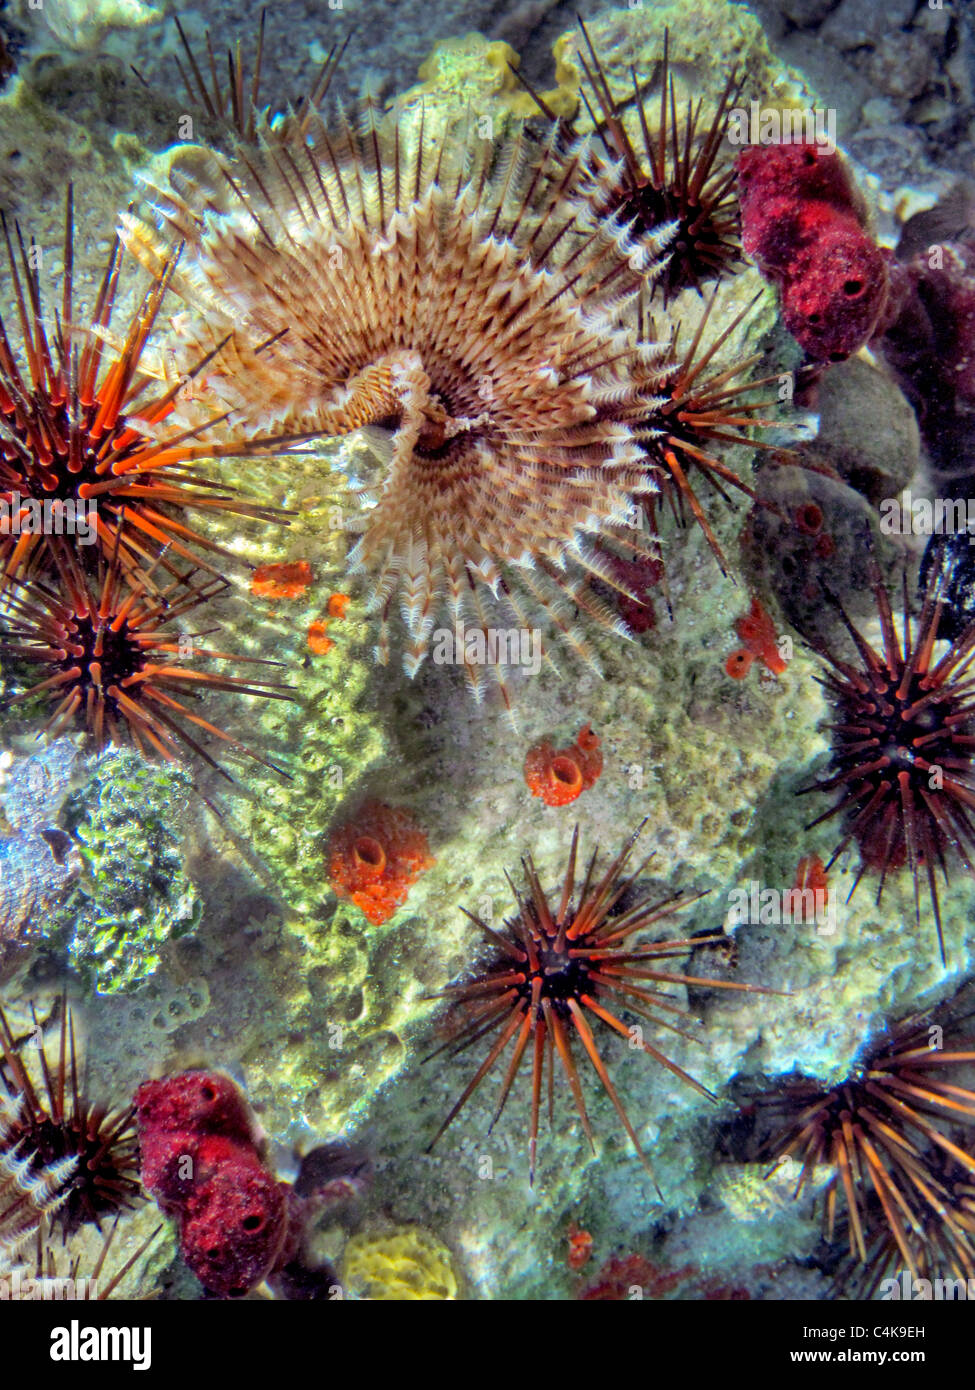 Korallen Featherduster Wurm lang spined Seeigel Stockfoto